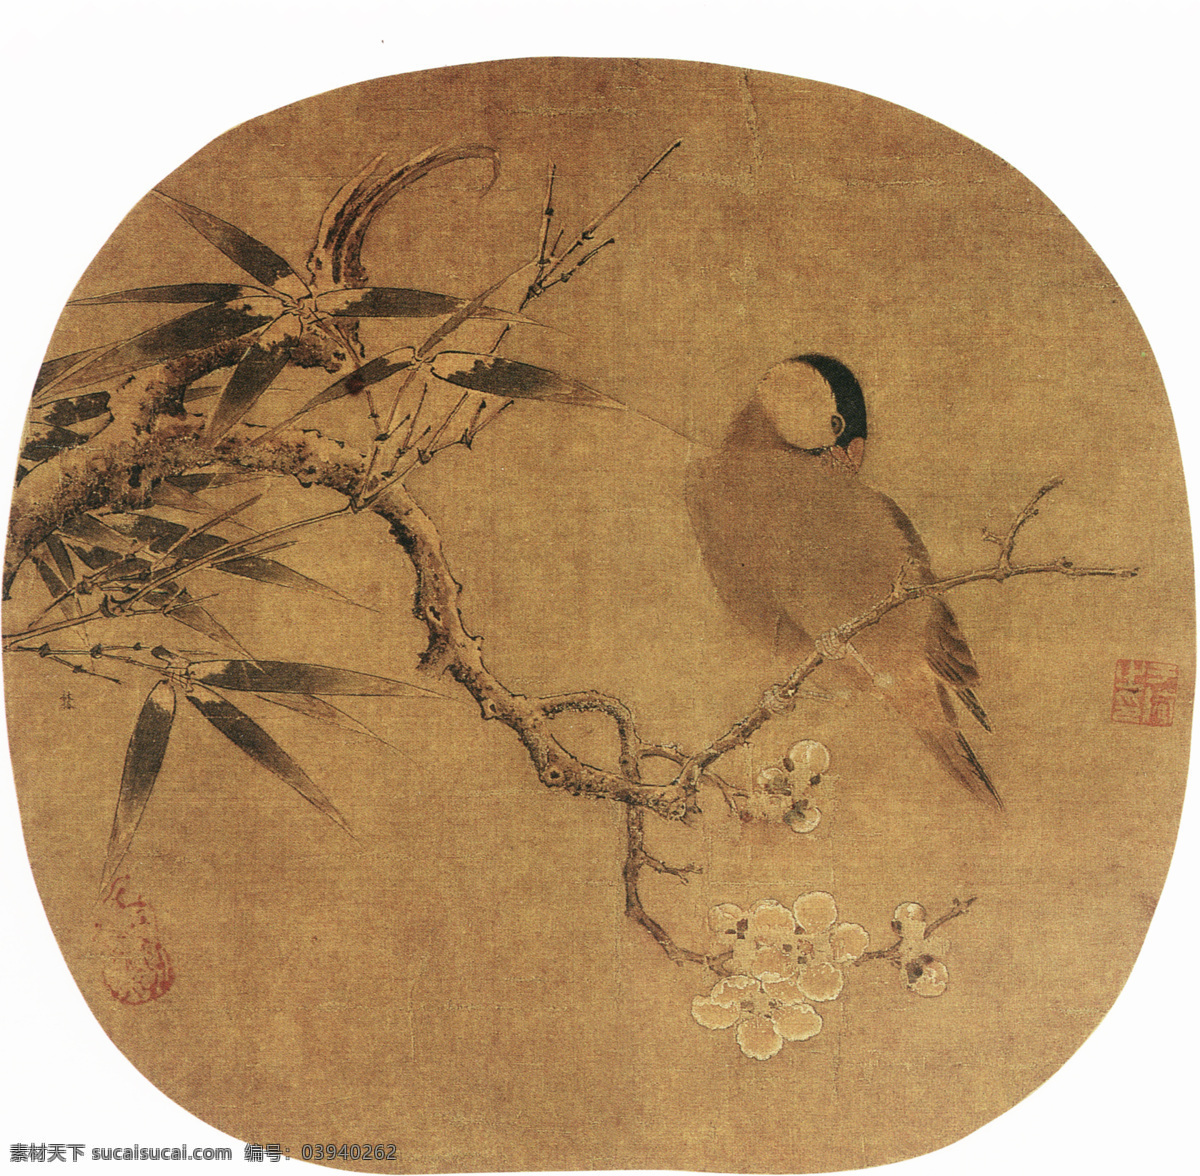 中国 名画 古画 广告 大 辞典 国画 绘画 绘画书法图片 设计图 水墨 文化艺术 有名 中国名画 著名